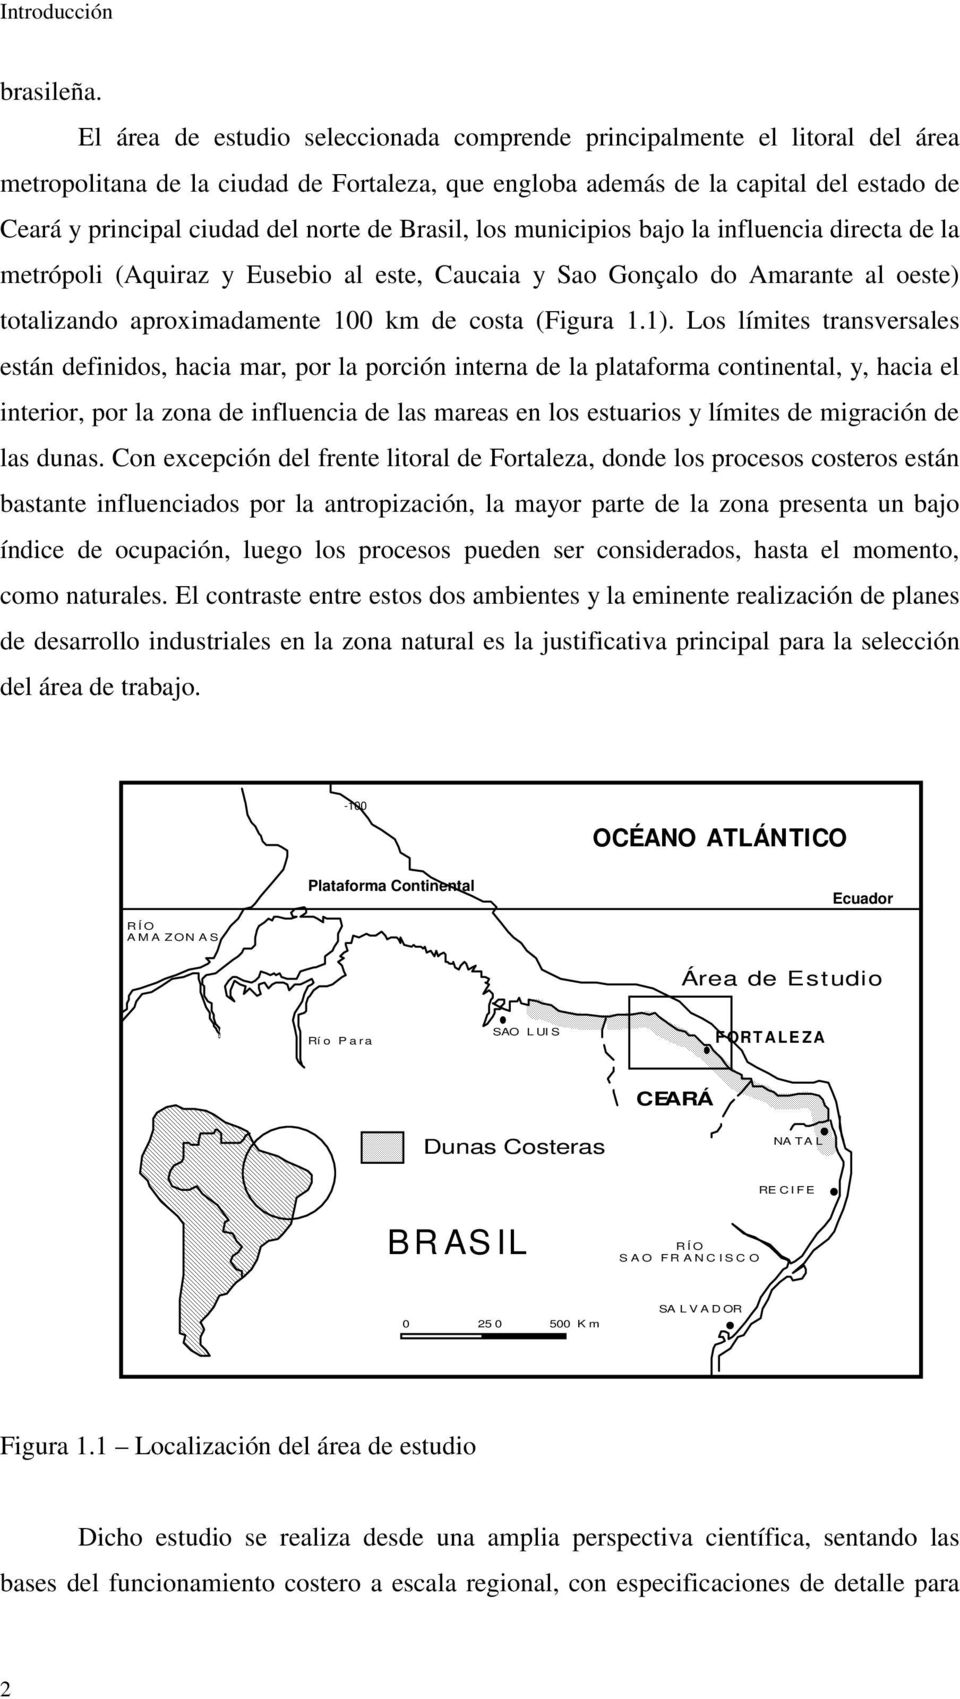 de Brasil, los municipios bajo la influencia directa de la metrópoli (Aquiraz y Eusebio al este, Caucaia y Sao Gonçalo do Amarante al oeste) totalizando aproximadamente 100 km de costa (Figura 1.1).